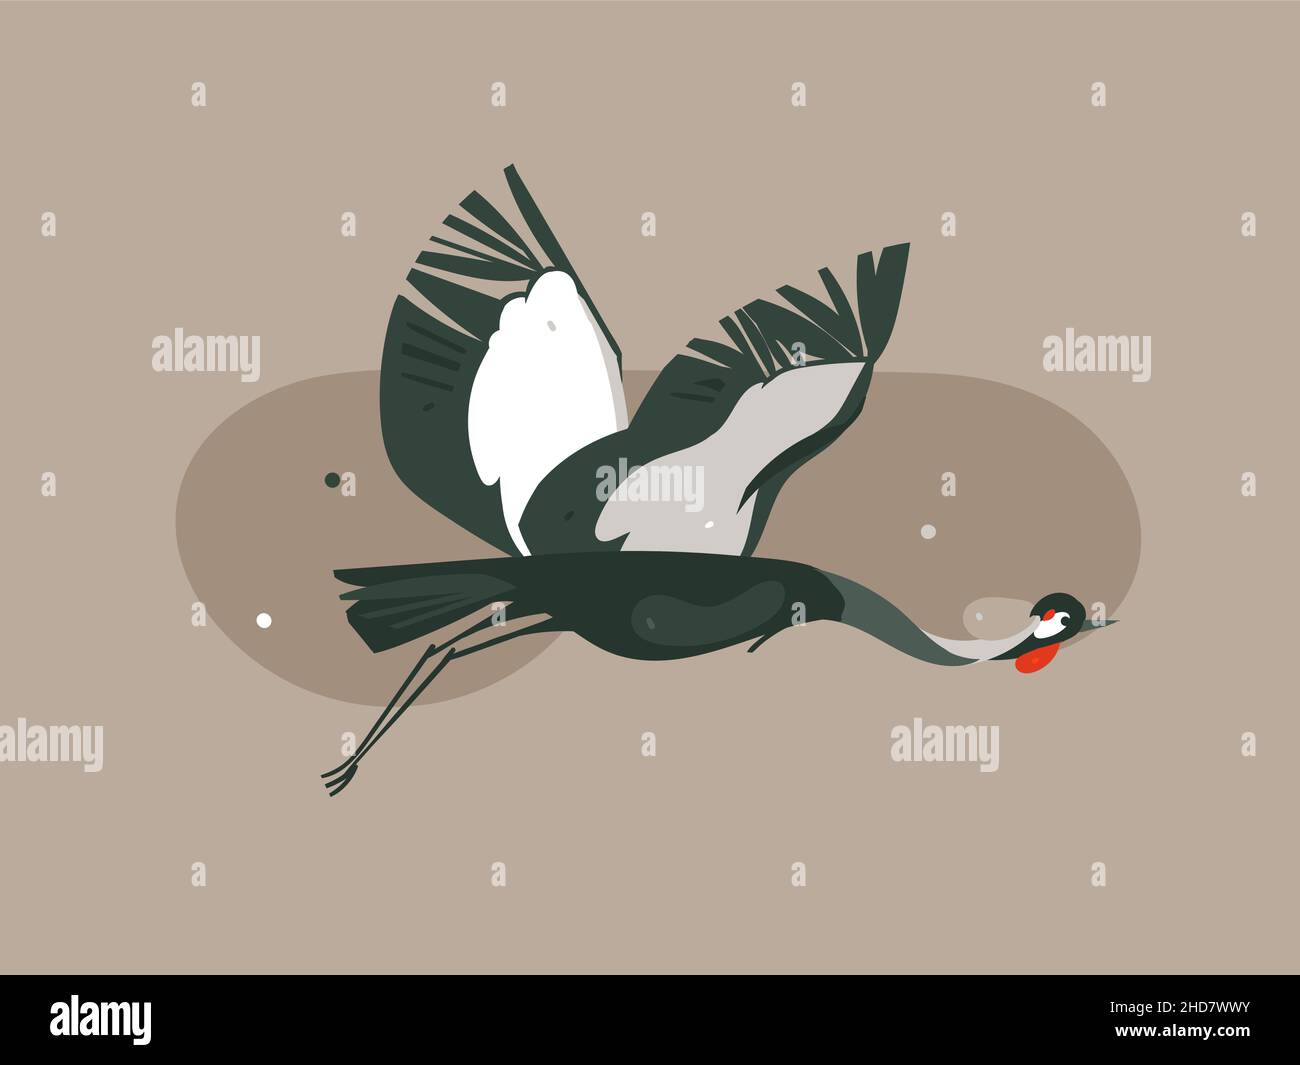 Handgezeichneter Vektor abstrakte Cartoon moderne Grafik African Safari Natur Konzept Illustrationen Kunst mit fliegenden Kranich Vogel isoliert auf Pastellfarbe Stock Vektor